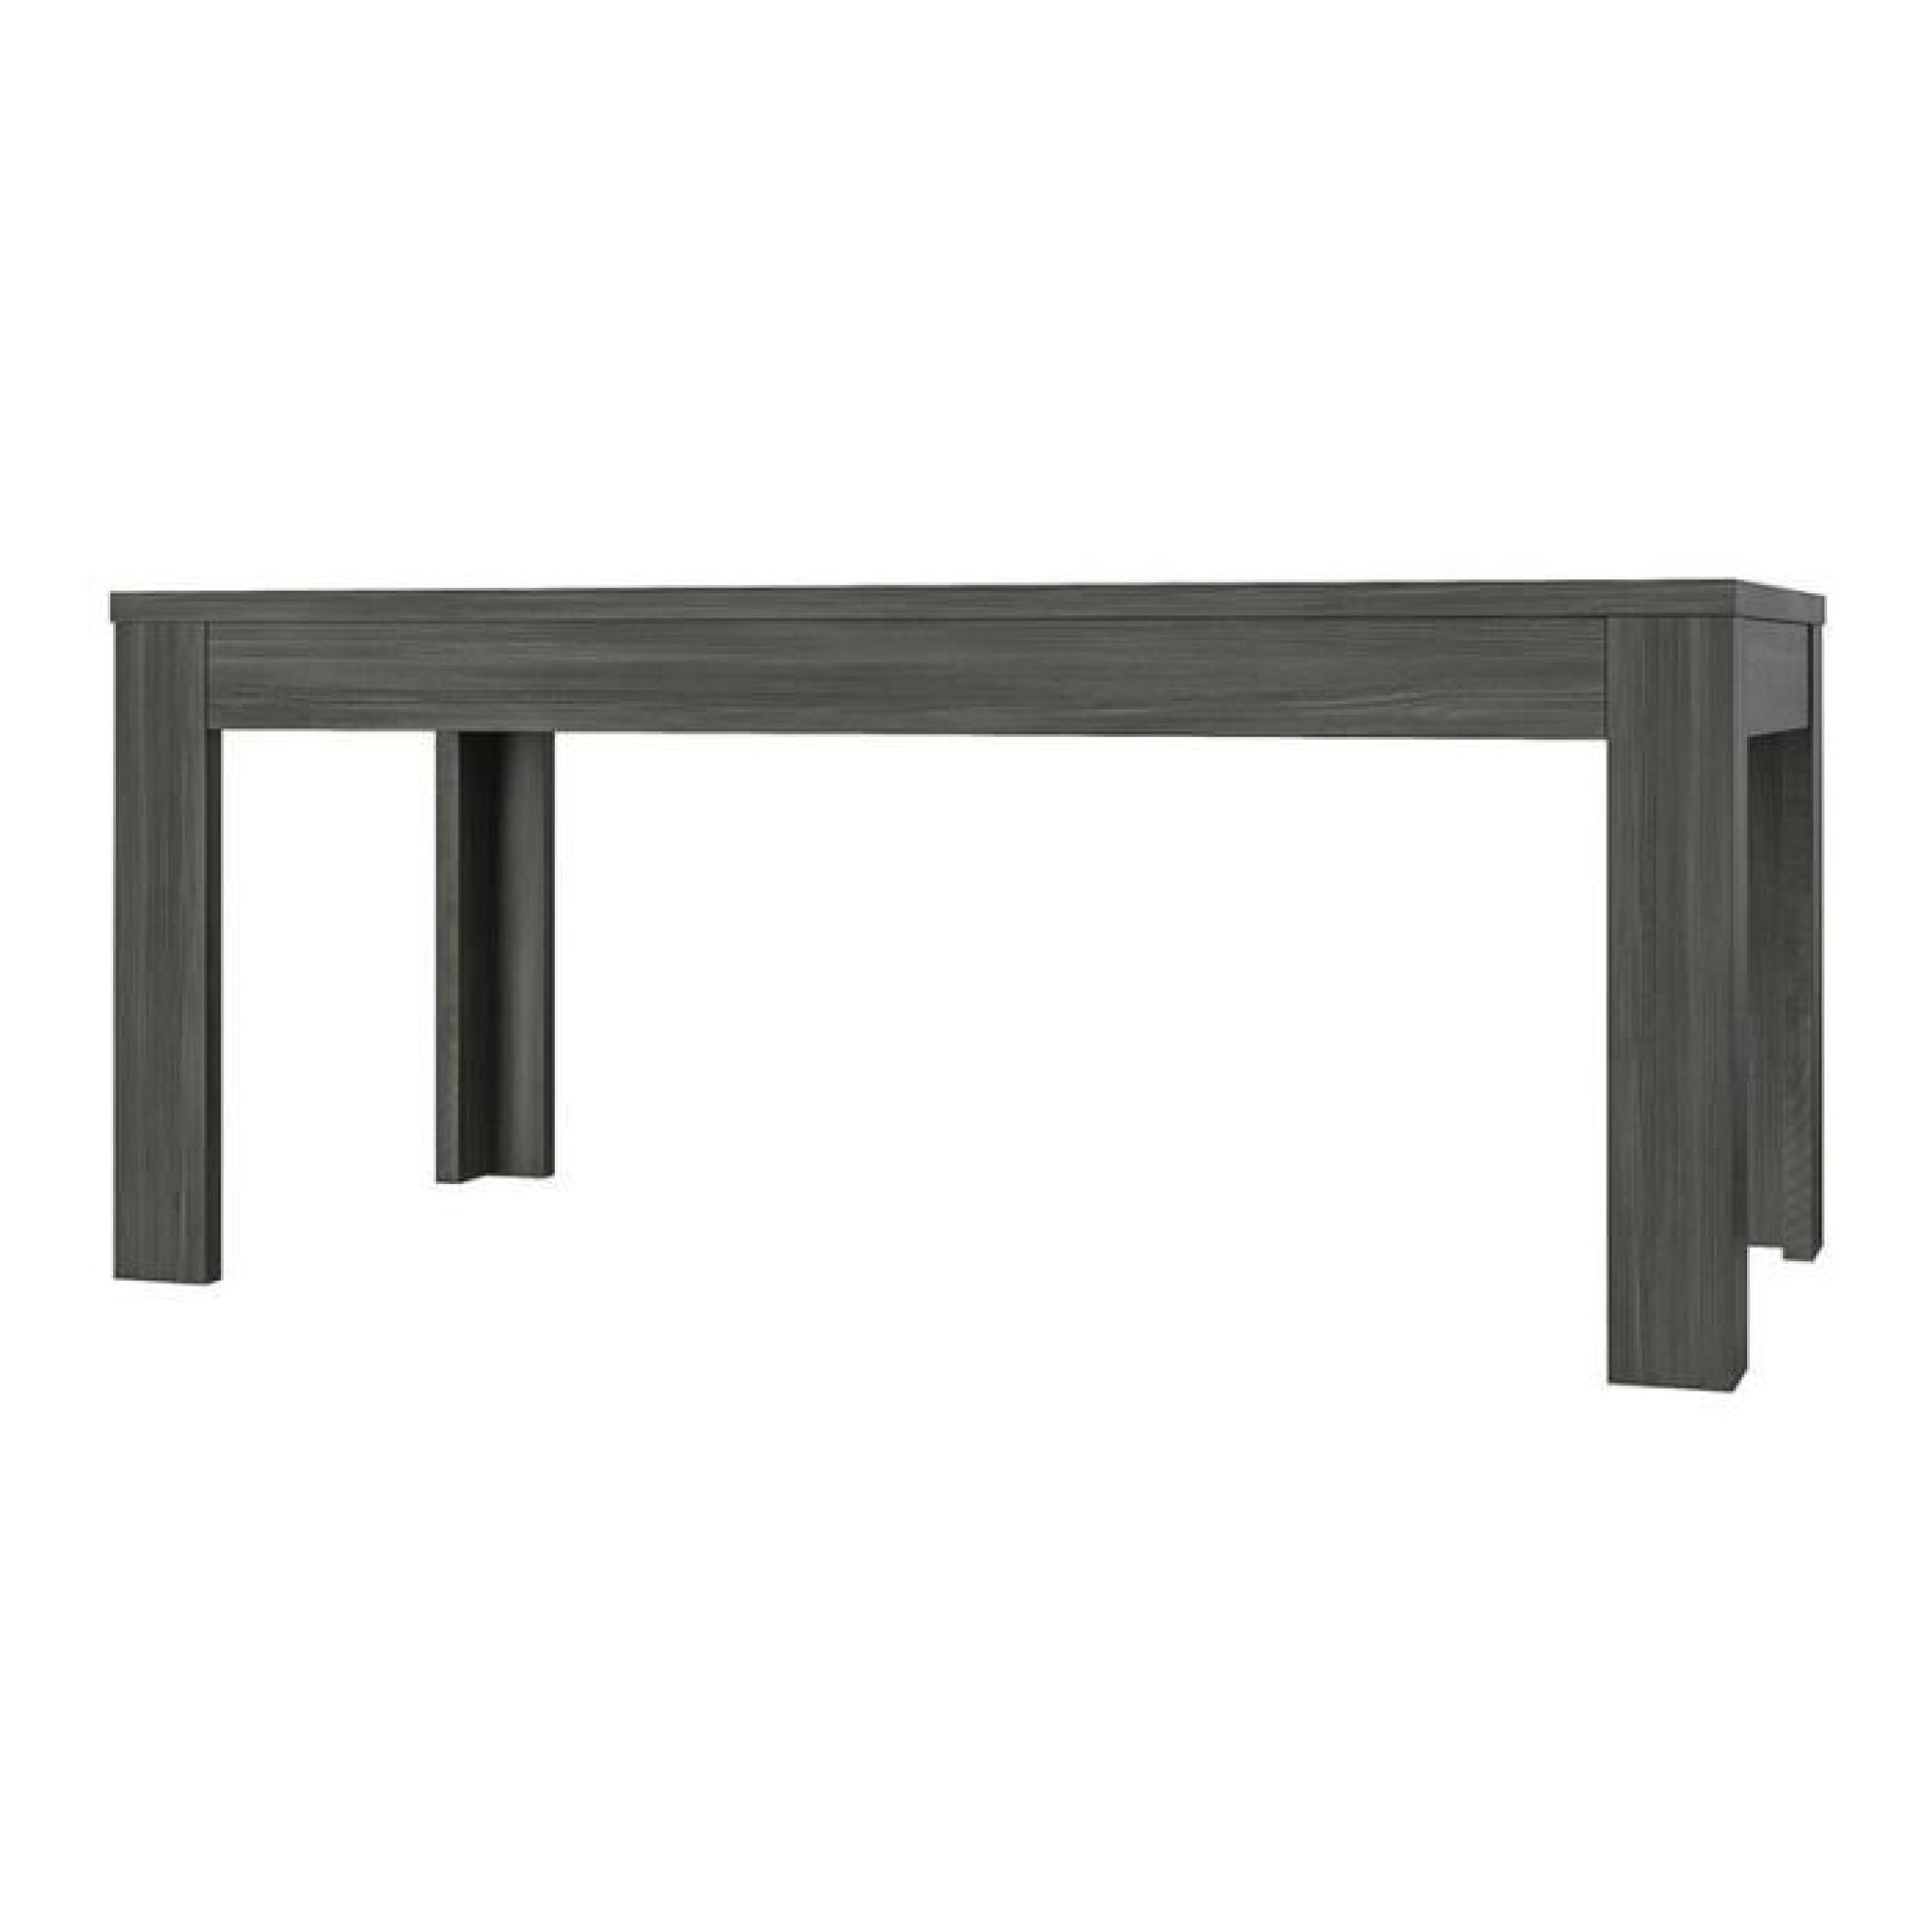 . Table coloris chêne noir Ally rectangulaire 160 cm.